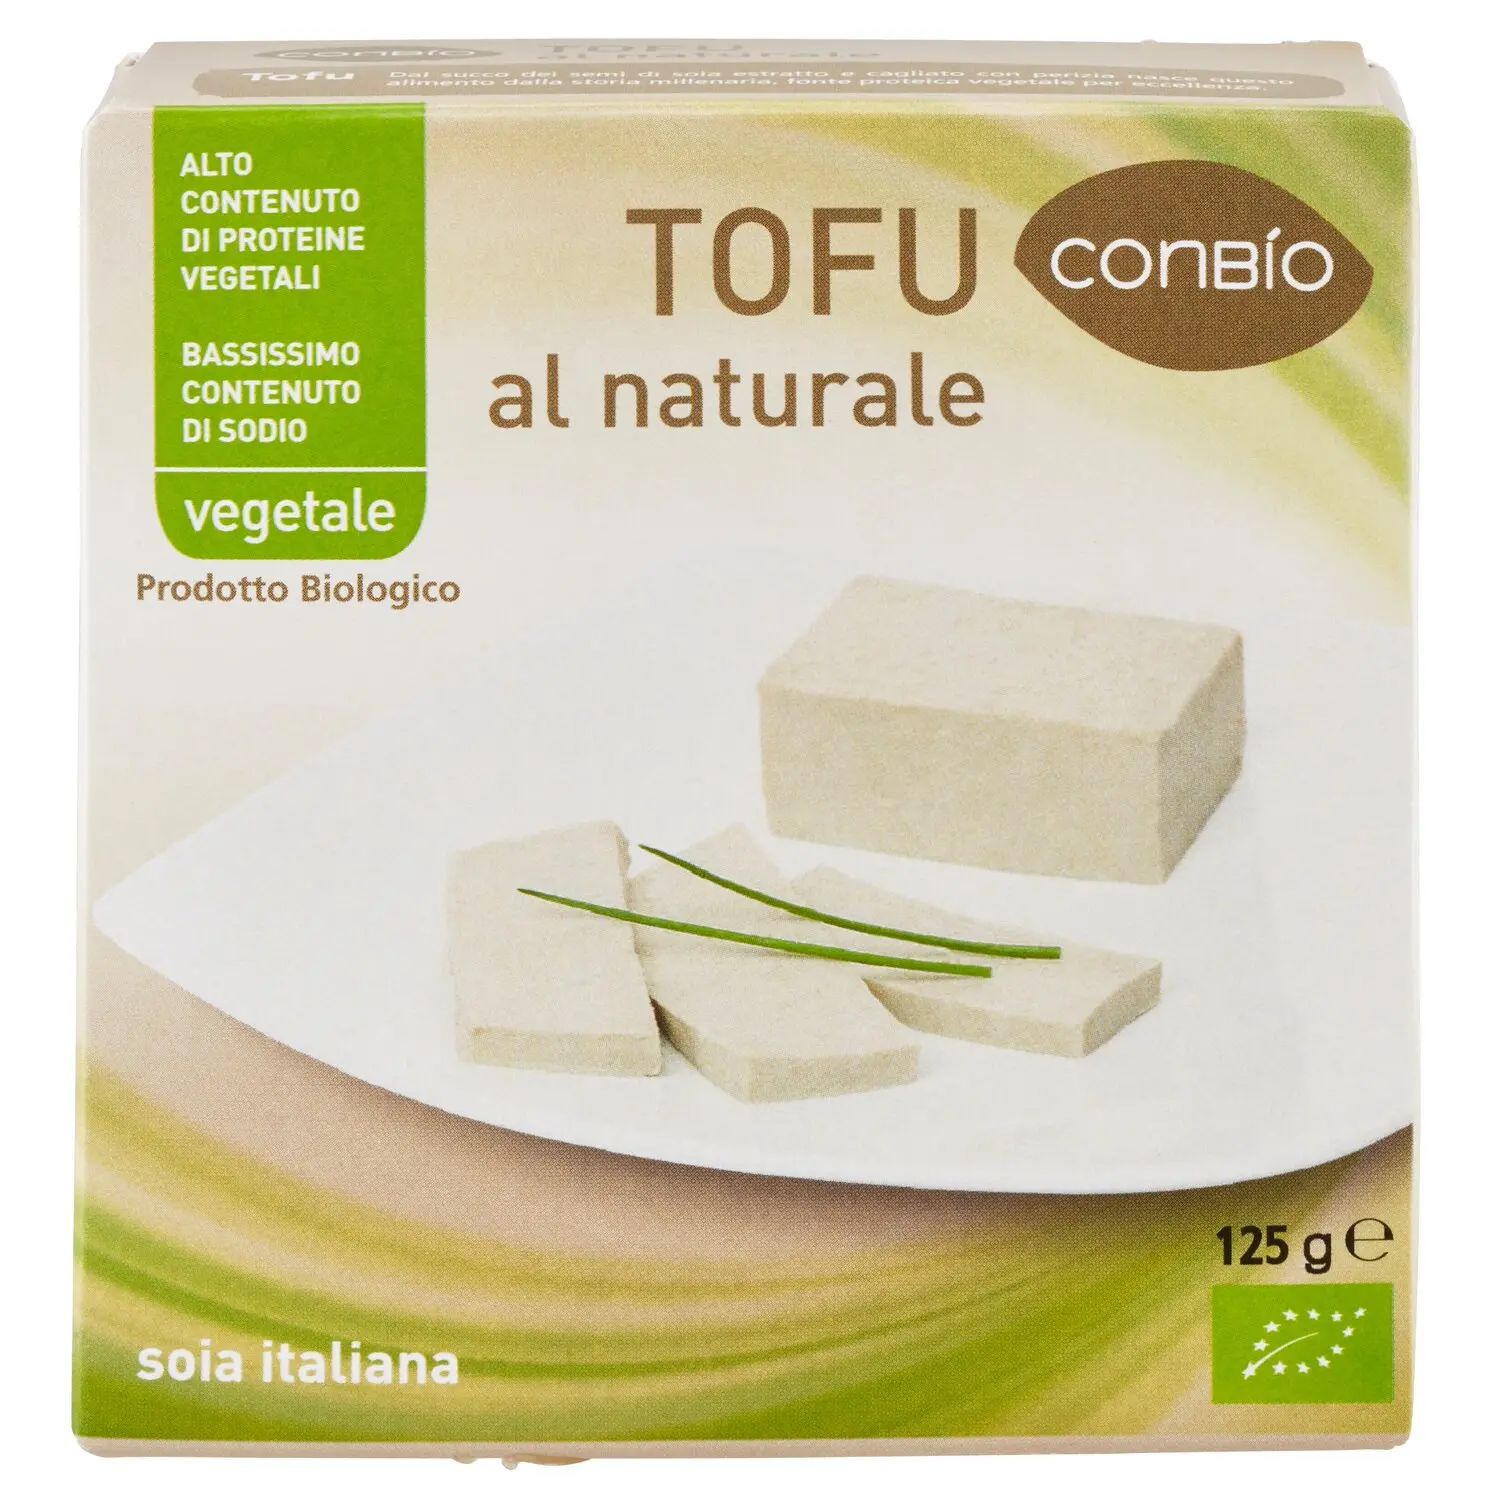 Carrefour Bio Tofu al naturale 2 x 125 g